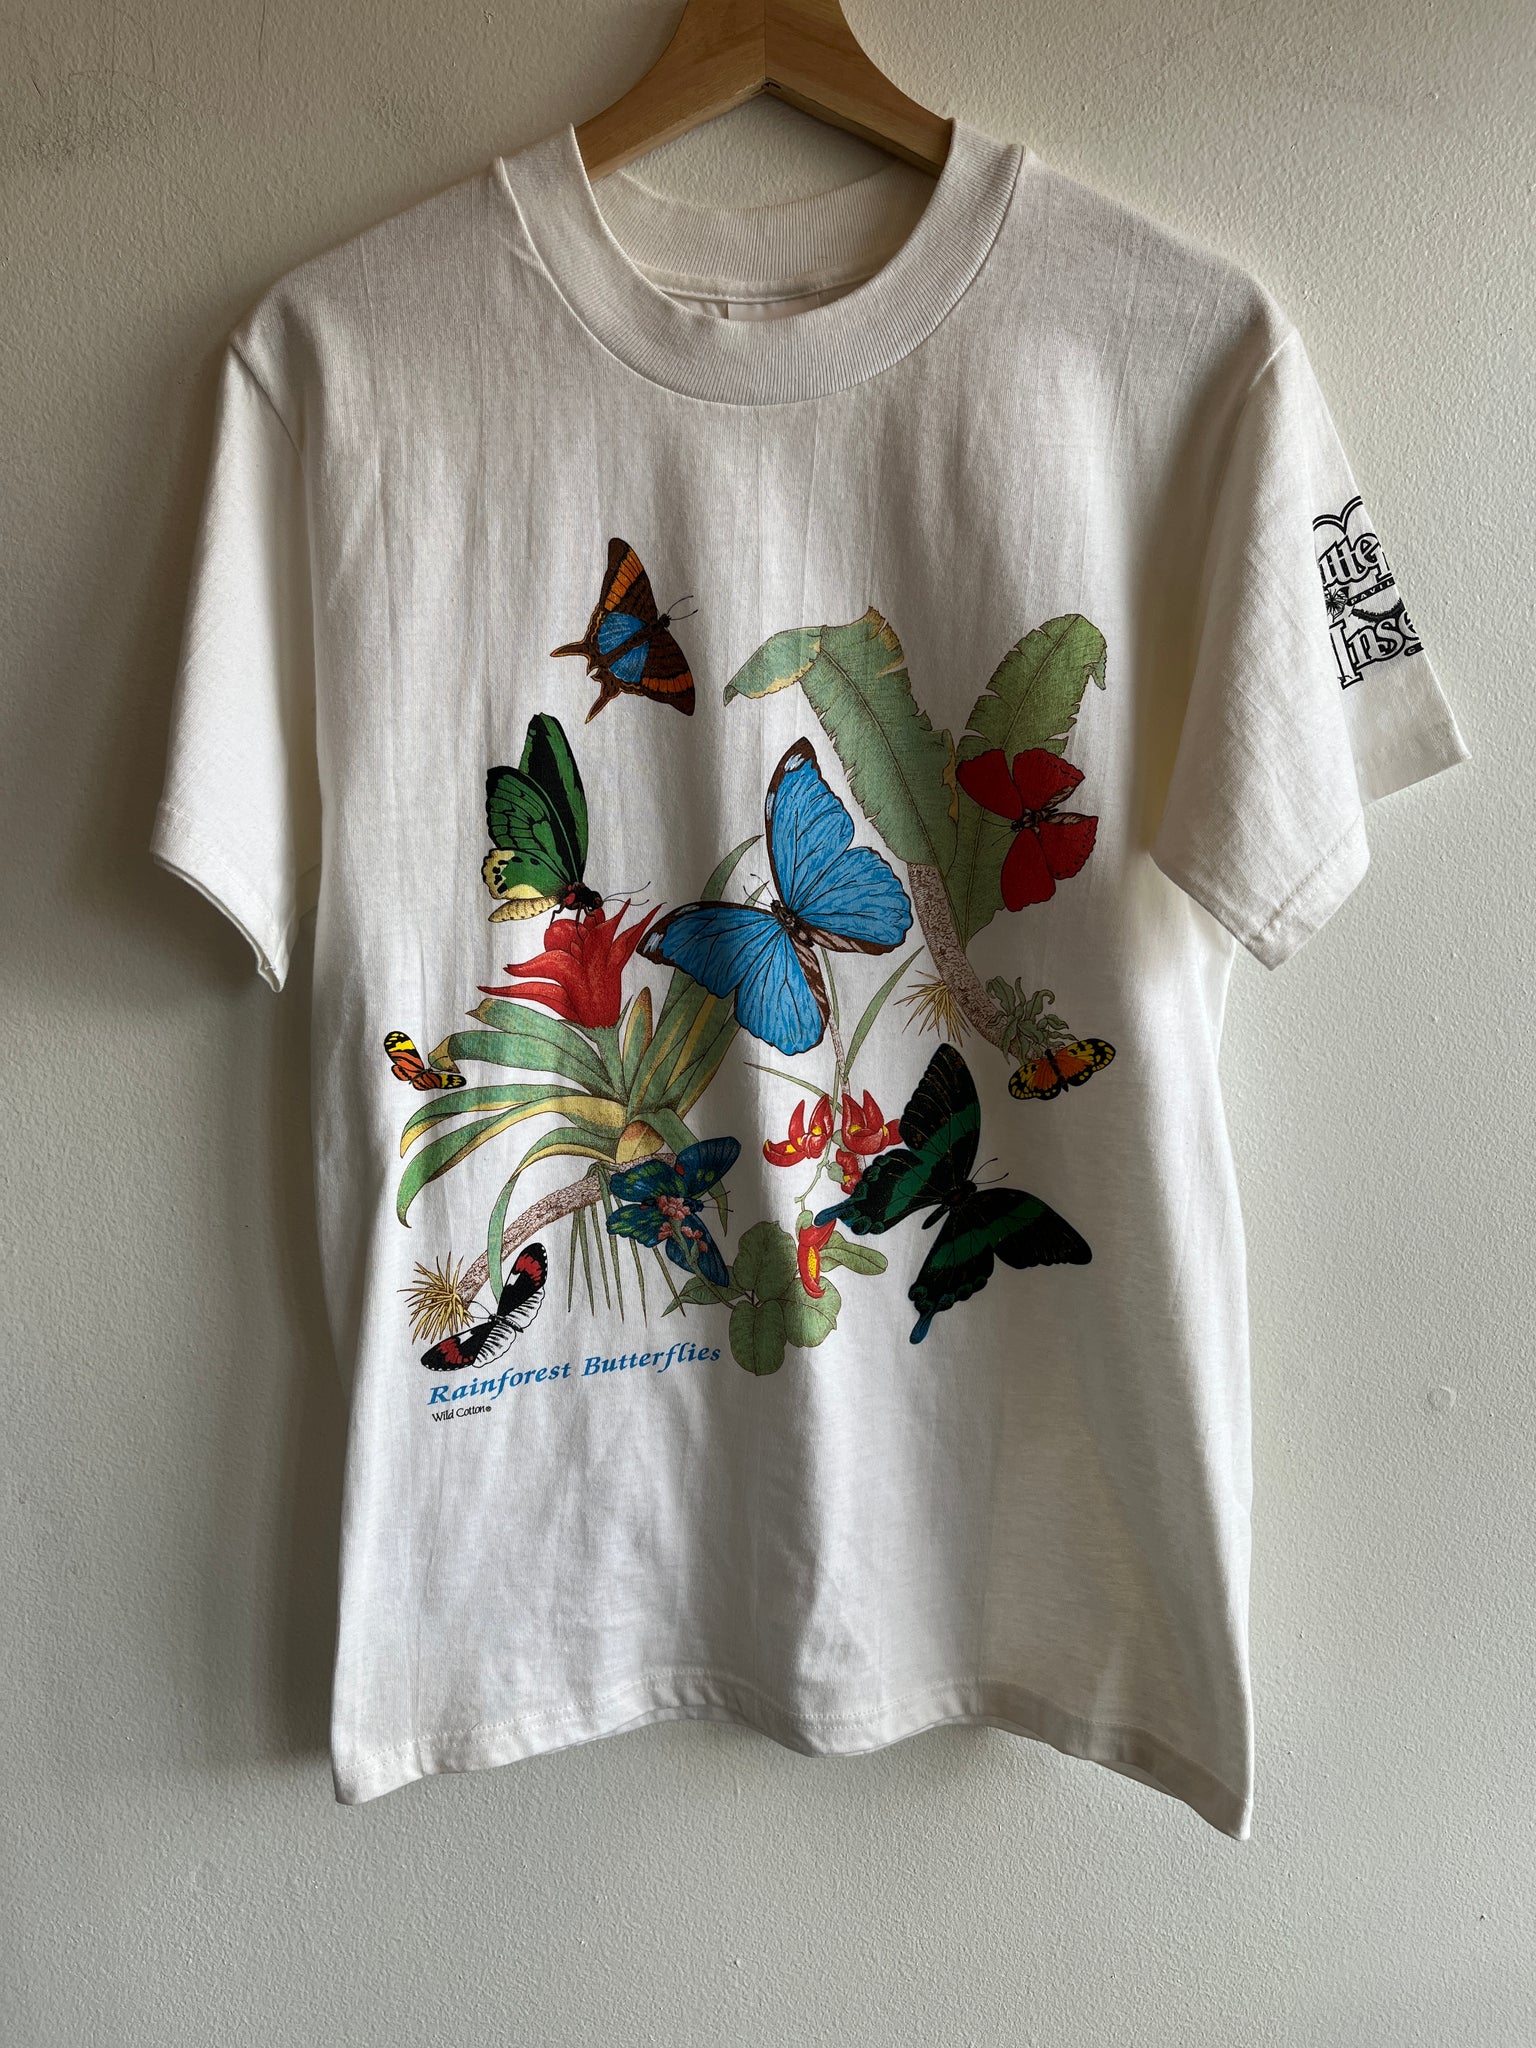 Vintage 1990’s “Butterfly Pavillion” T-Shirt